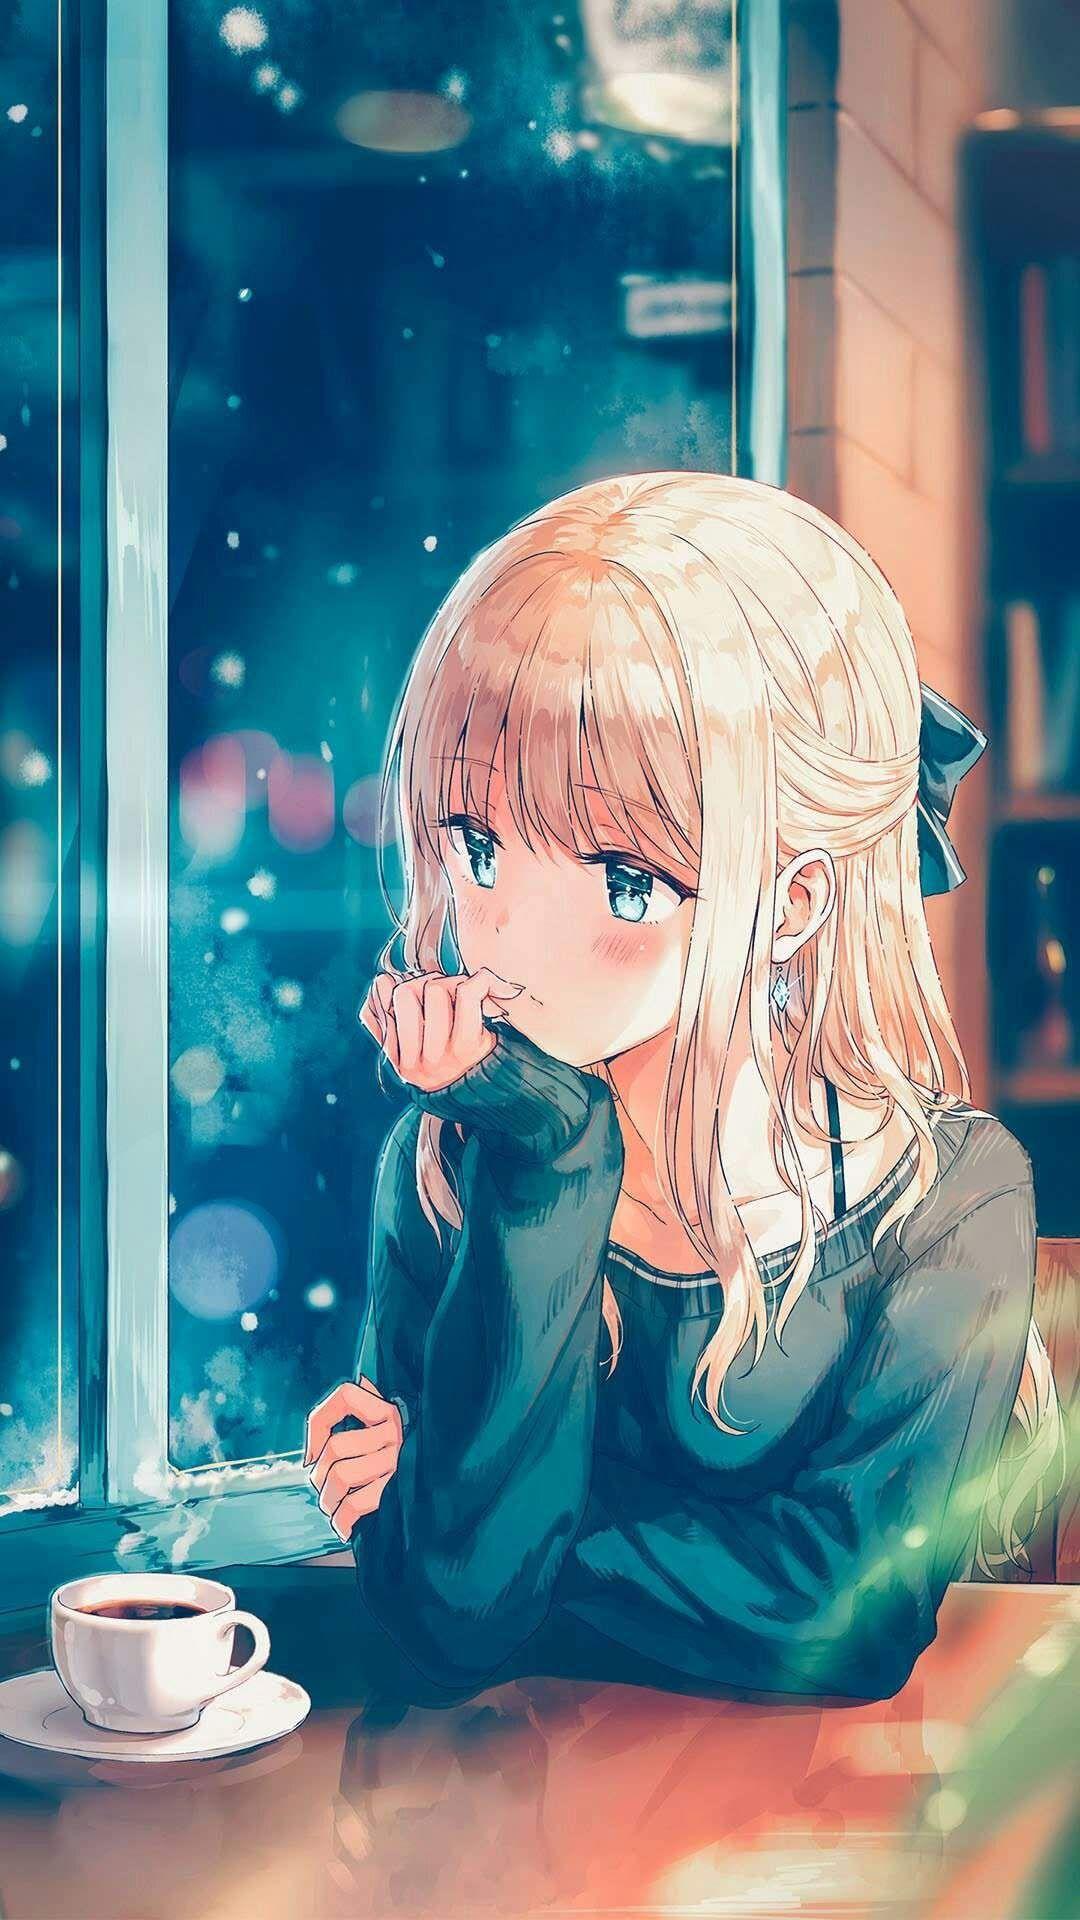 Hình nền Anime buồn 1080x1920 cho điện thoại di động - Cô gái anime uống cà phê - 1080x1920 - Tải xuống hình nền HD